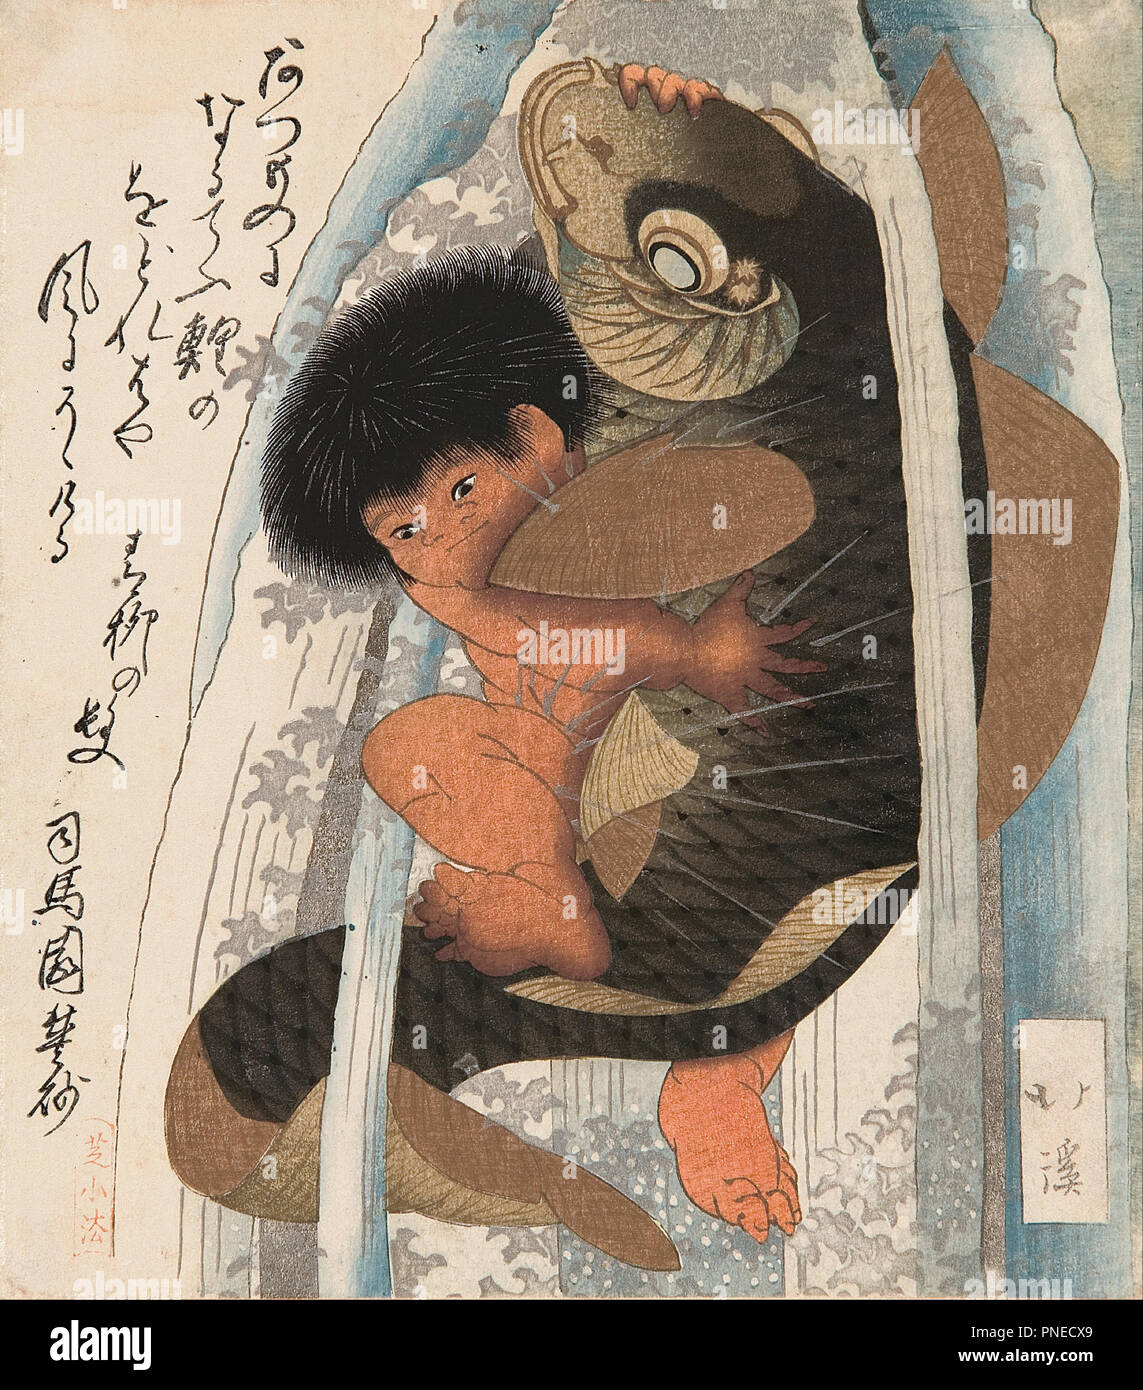 Kaidomaru wrestling une carpe dans une cascade. Date/Période : début des années 1820. L'impression. Shikishiban surimono, gravure sur bois en couleur. Hauteur : 21,50 mm (0.84 in) ; largeur : 19 mm (0,74 in). Auteur : TOYOTA HOKKEI. Banque D'Images